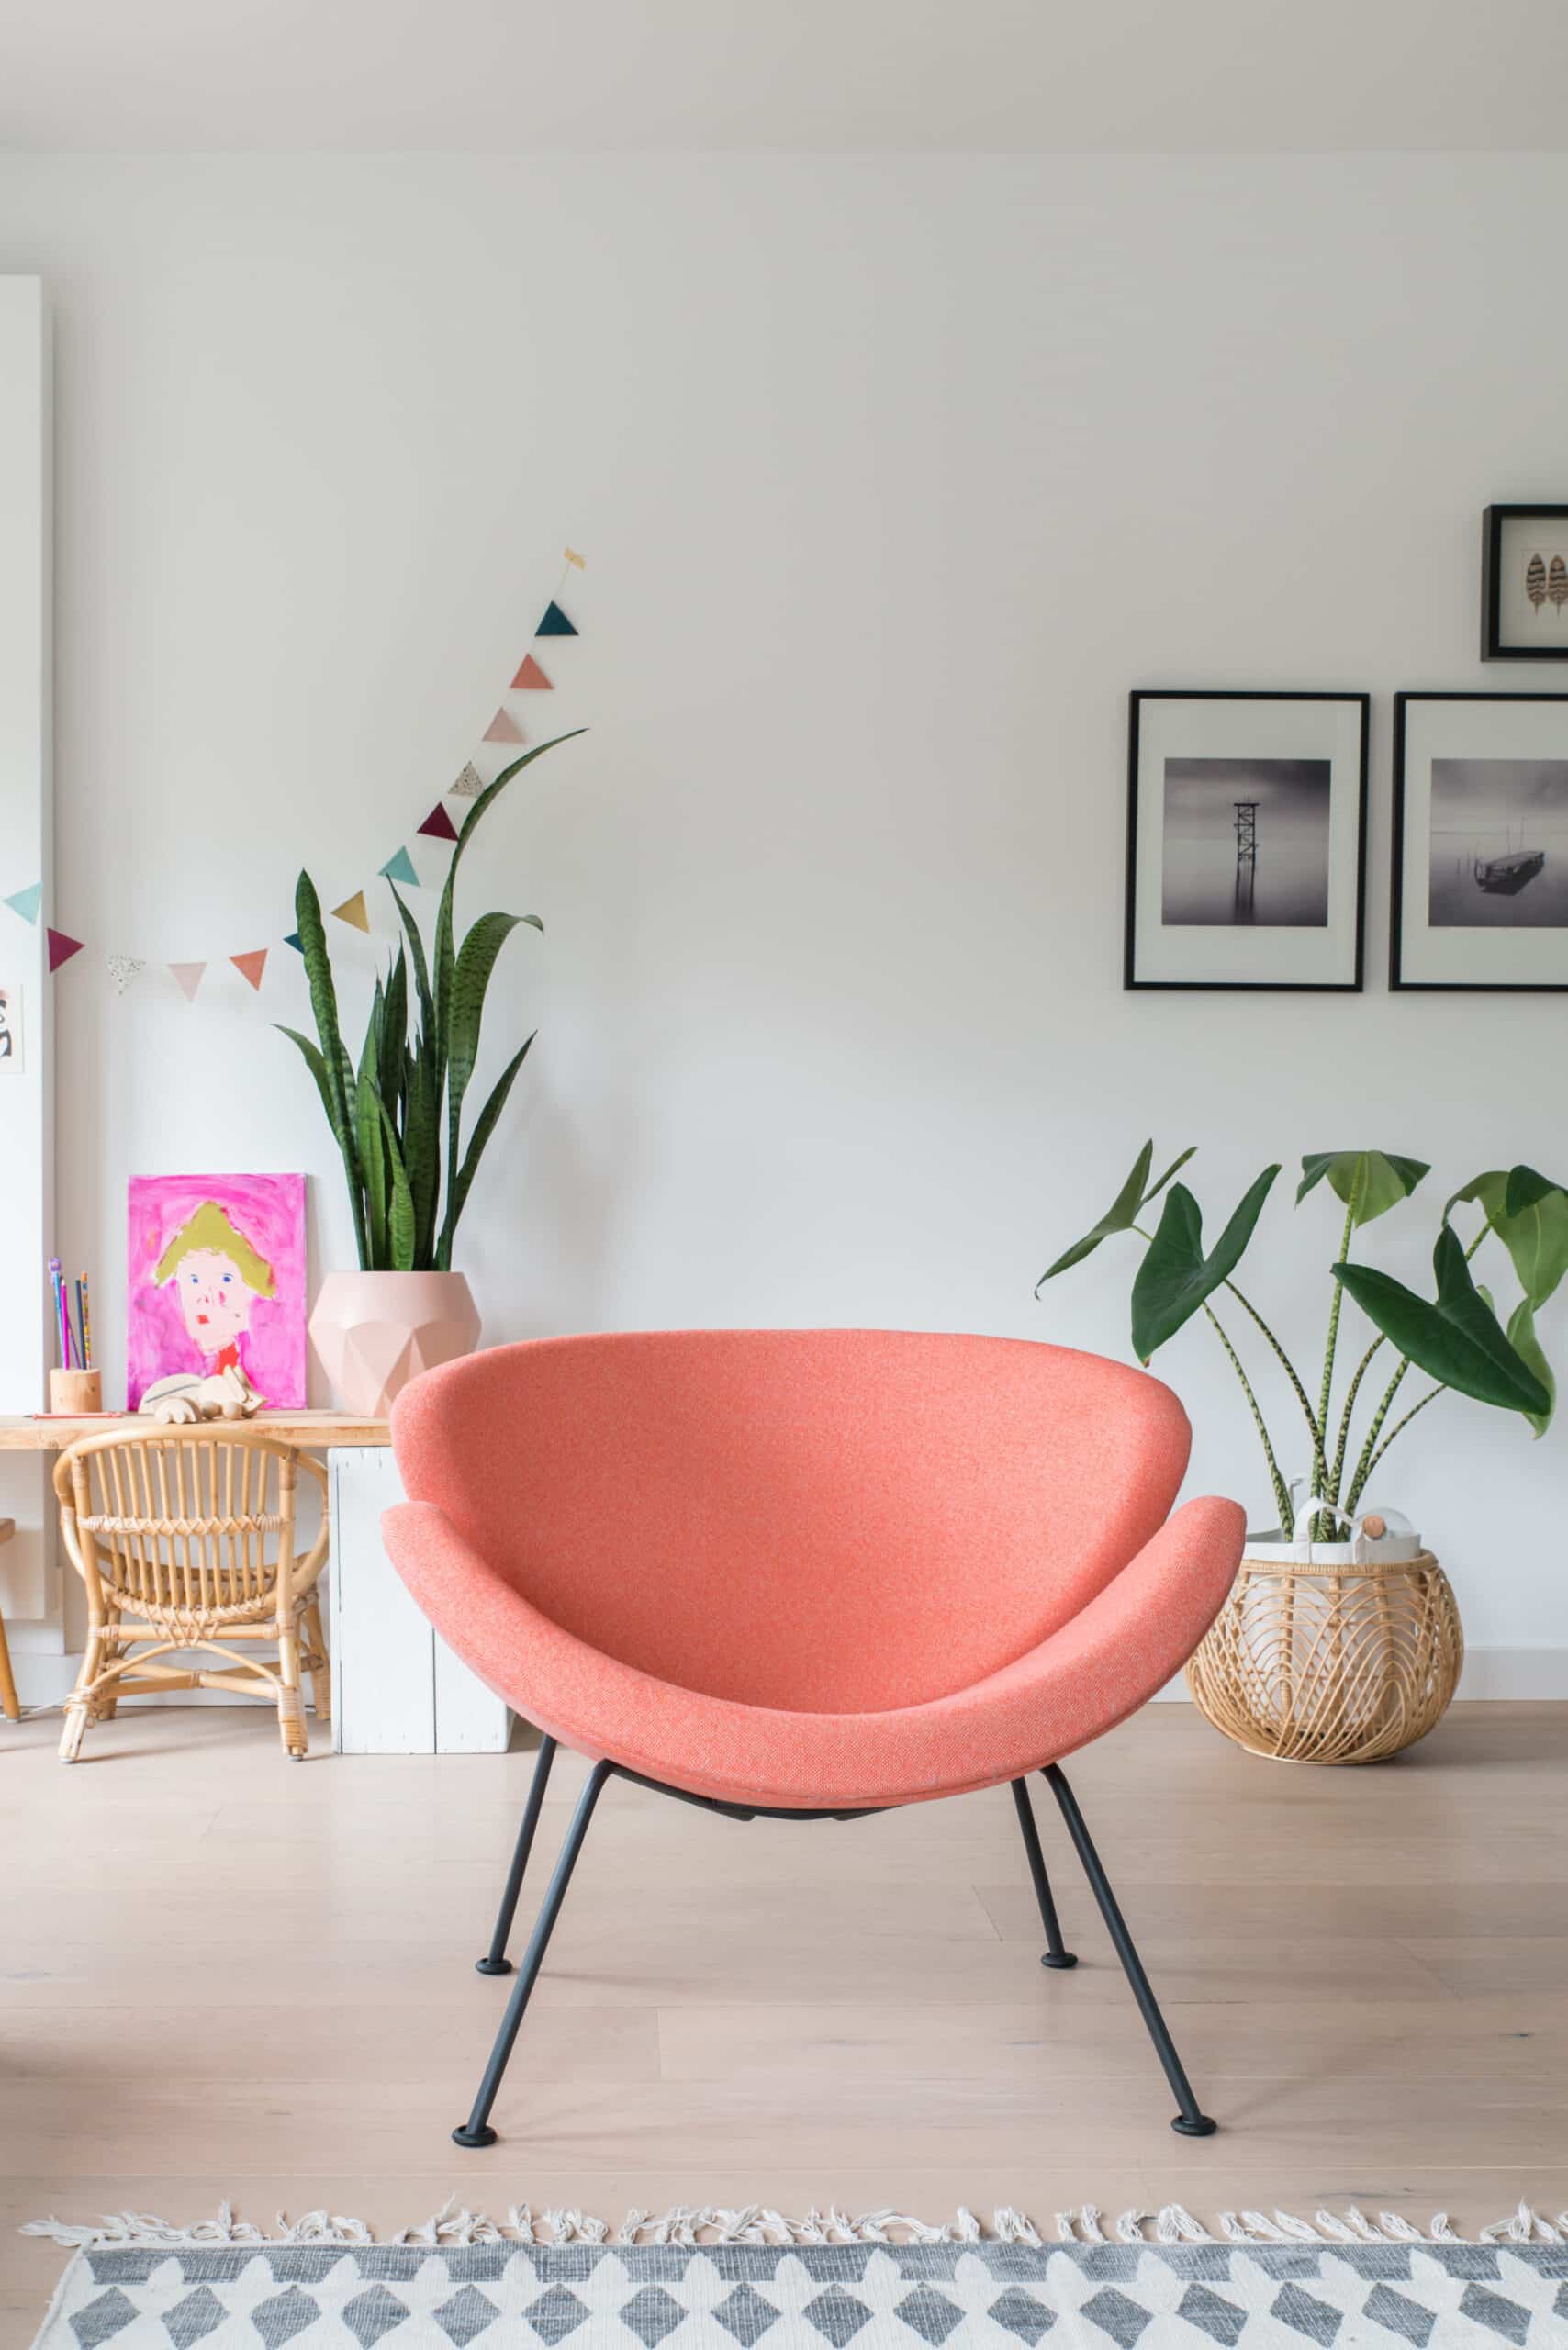 verlangen Clam Sloppenwijk Design fauteuil Orange Slice | Artifort meubilair | Interieurhof Alkmaar